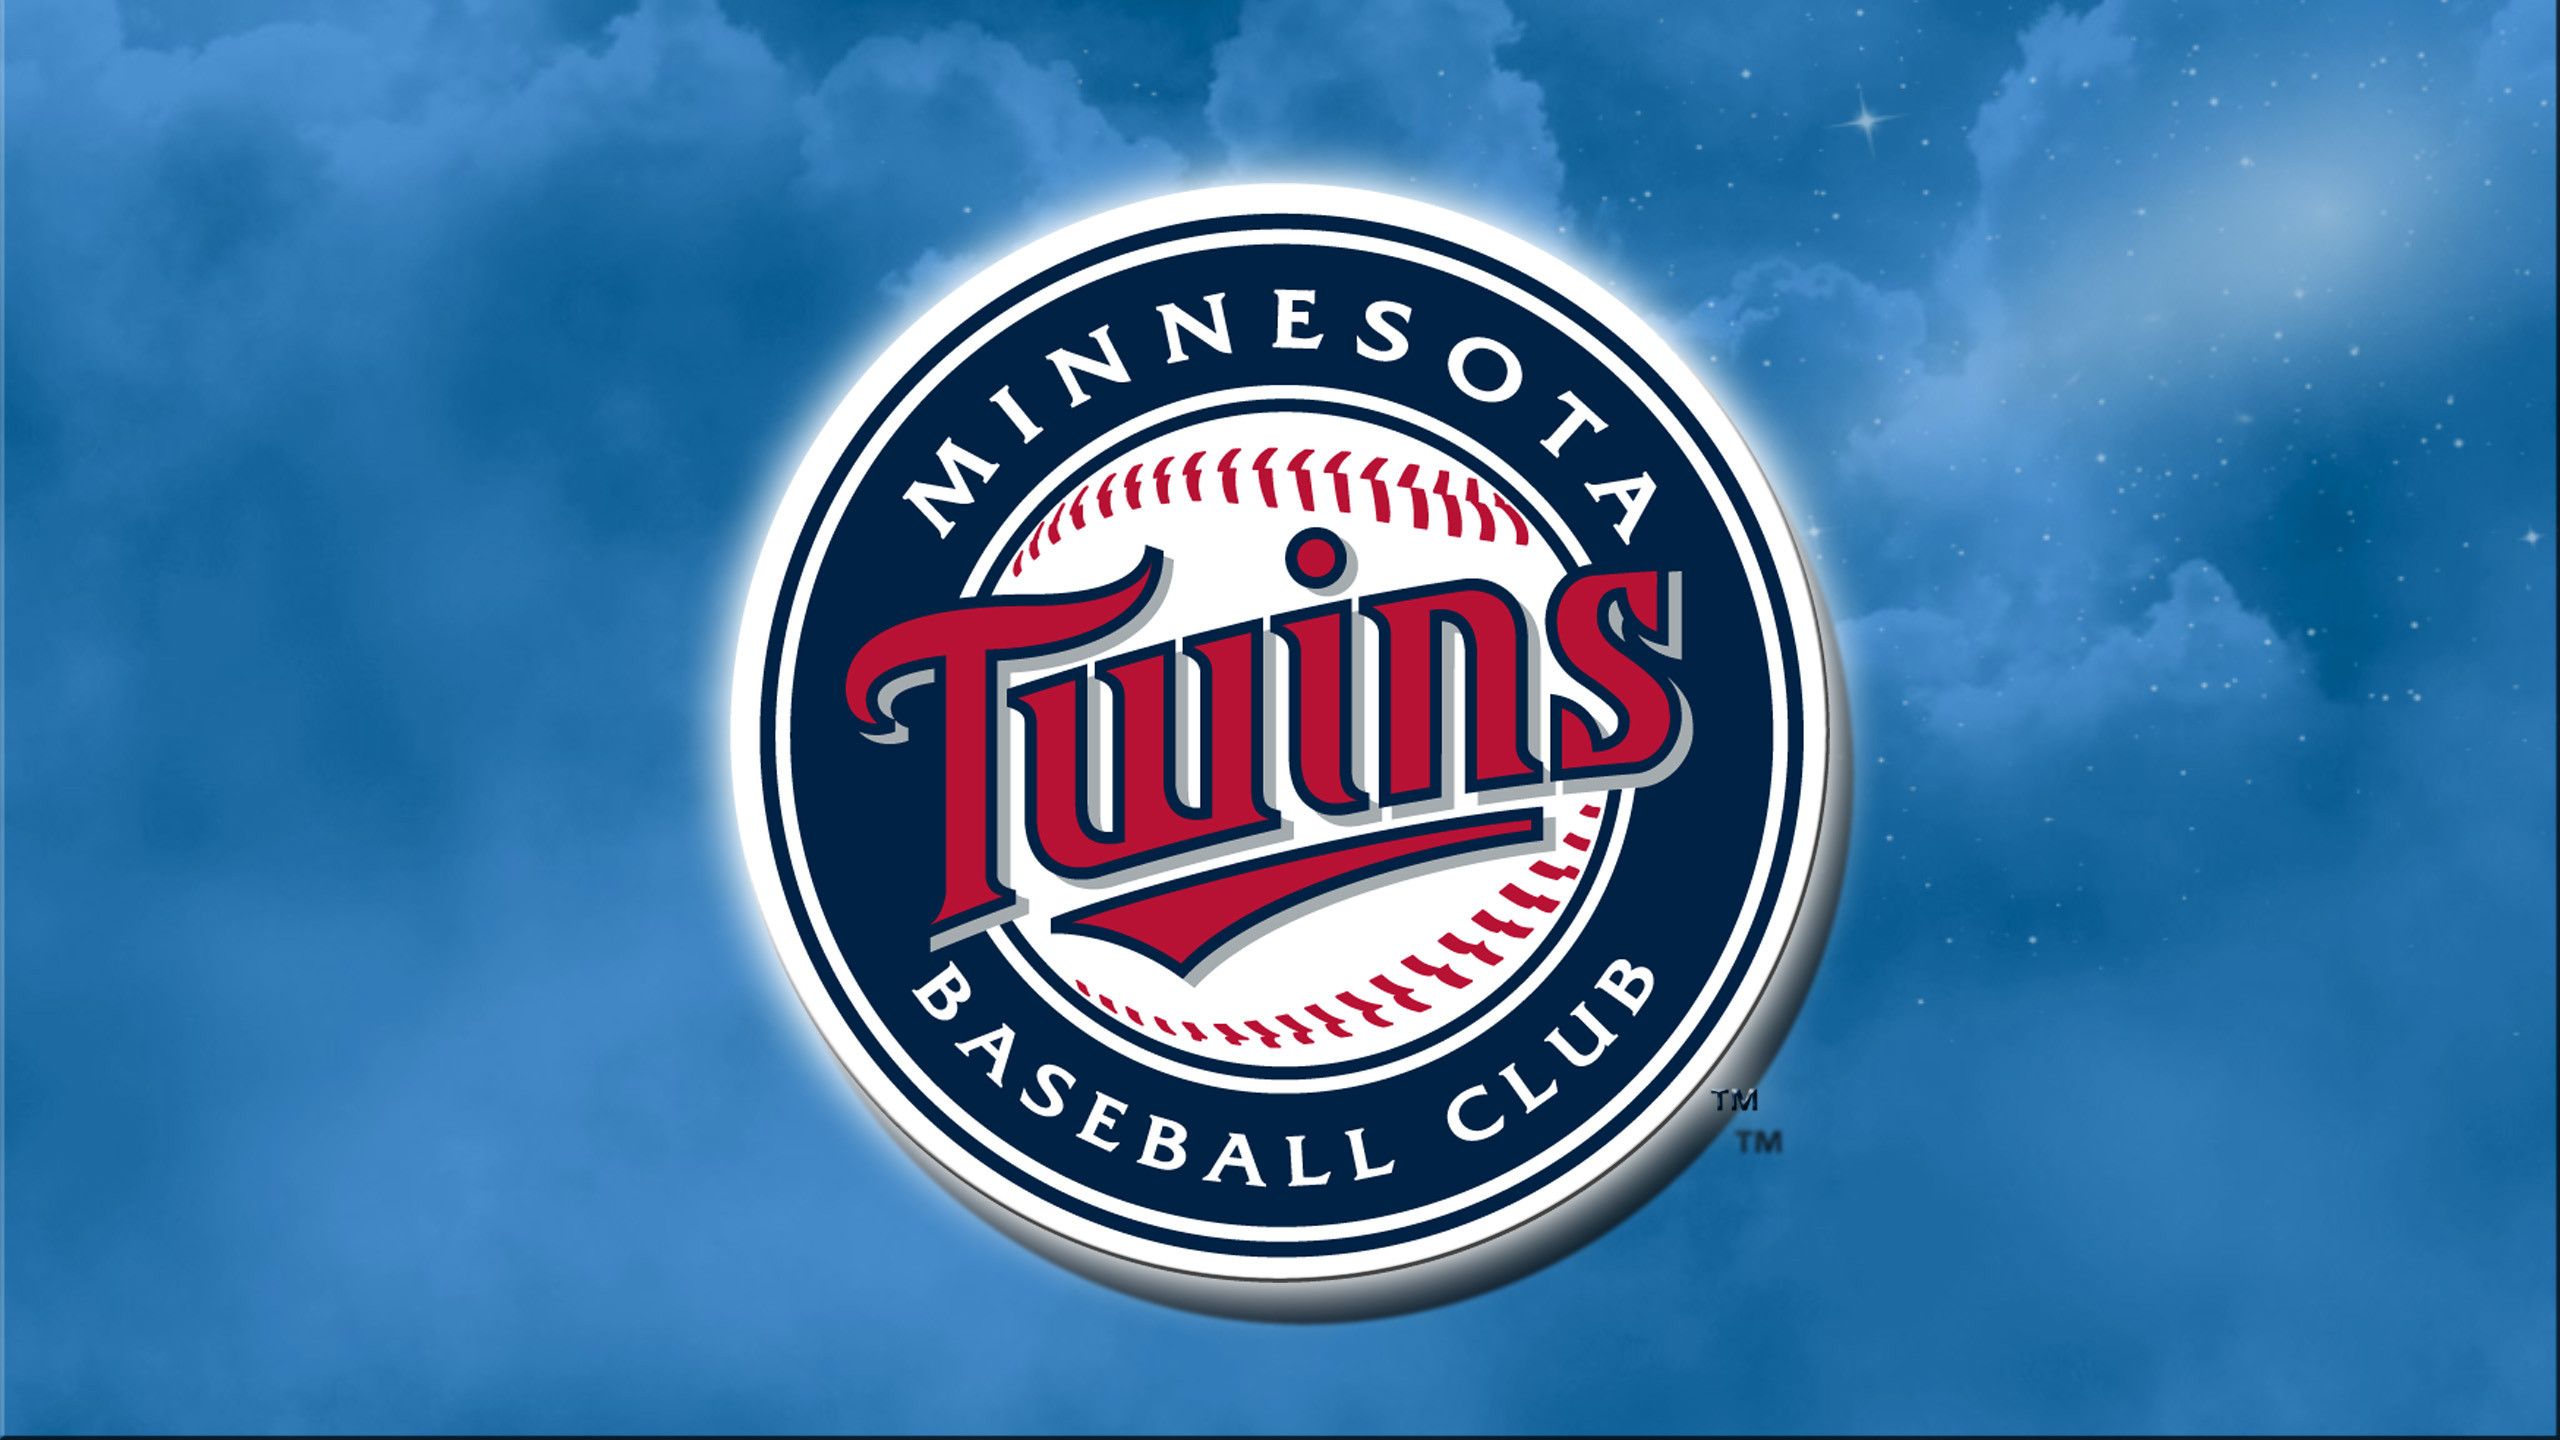 Les Twins - Minnesota Twins Logo 2017 - HD Wallpaper 